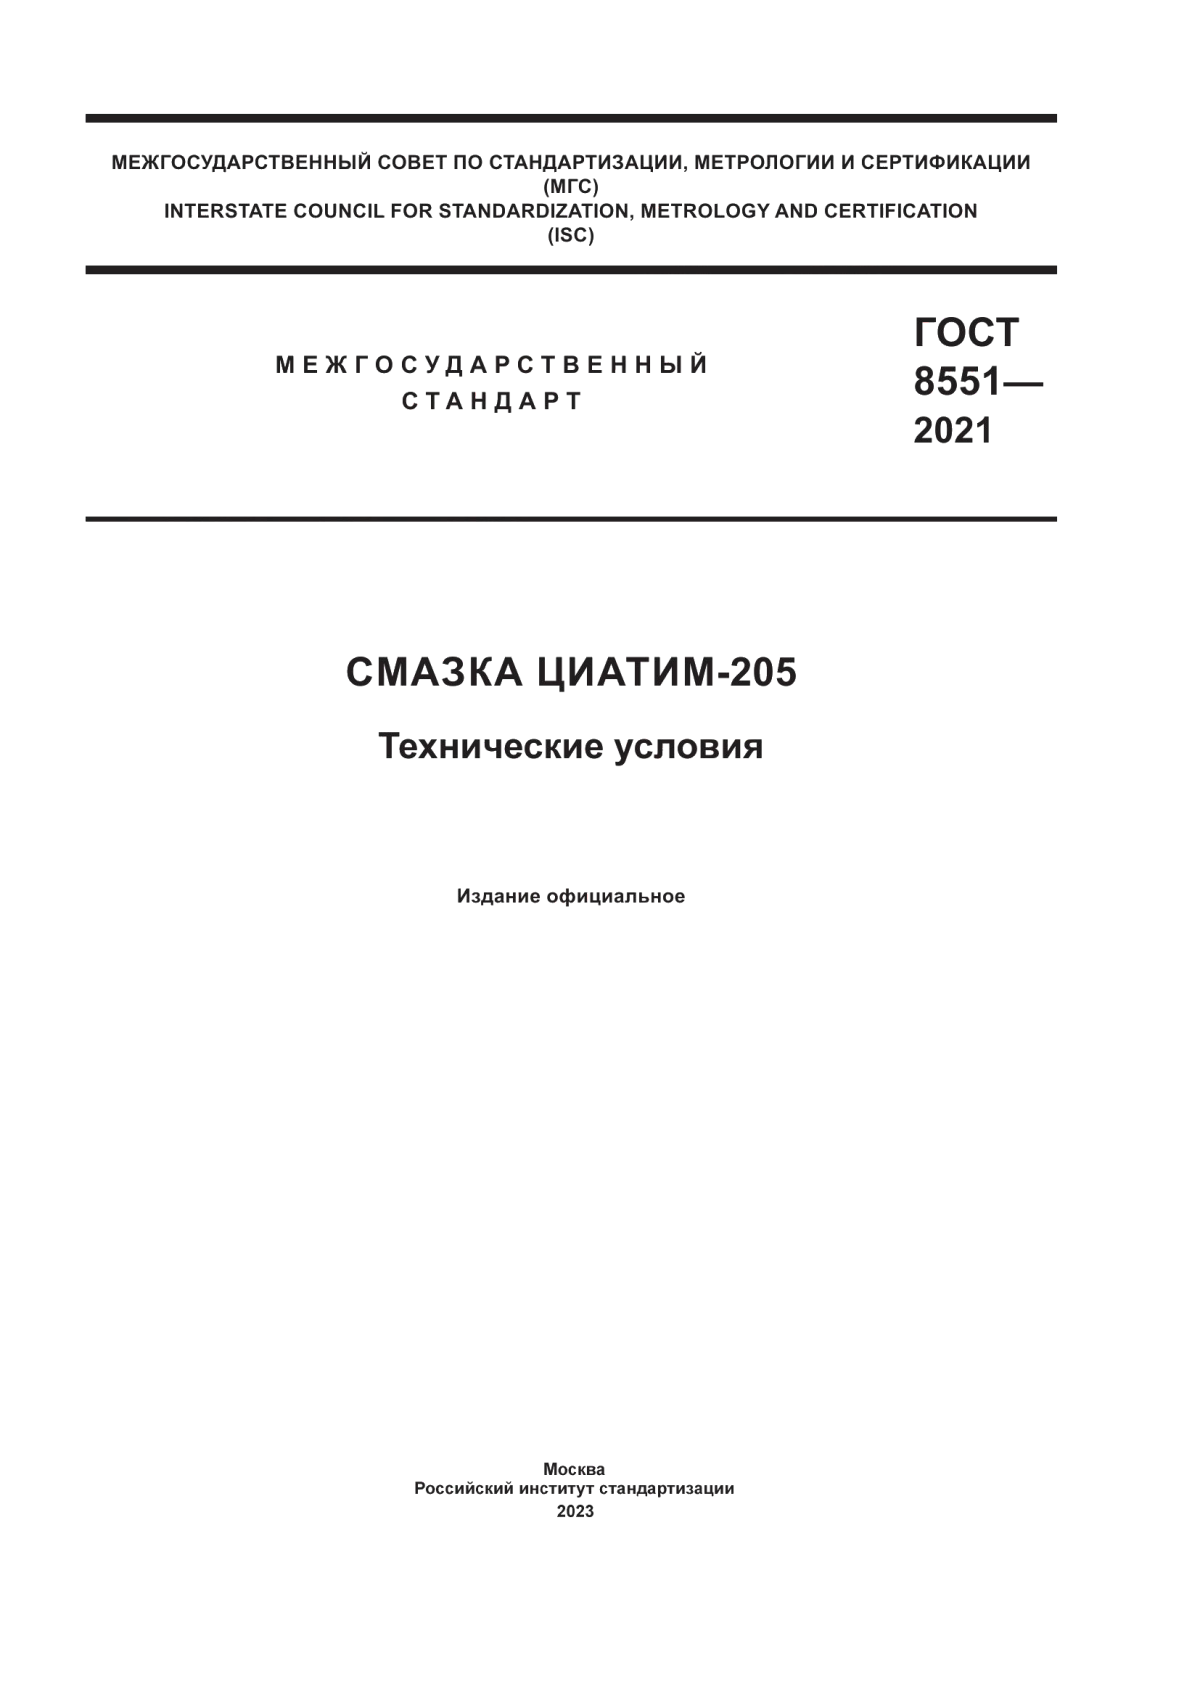 ГОСТ 8551-2021 Смазка ЦИАТИМ-205. Технические условия